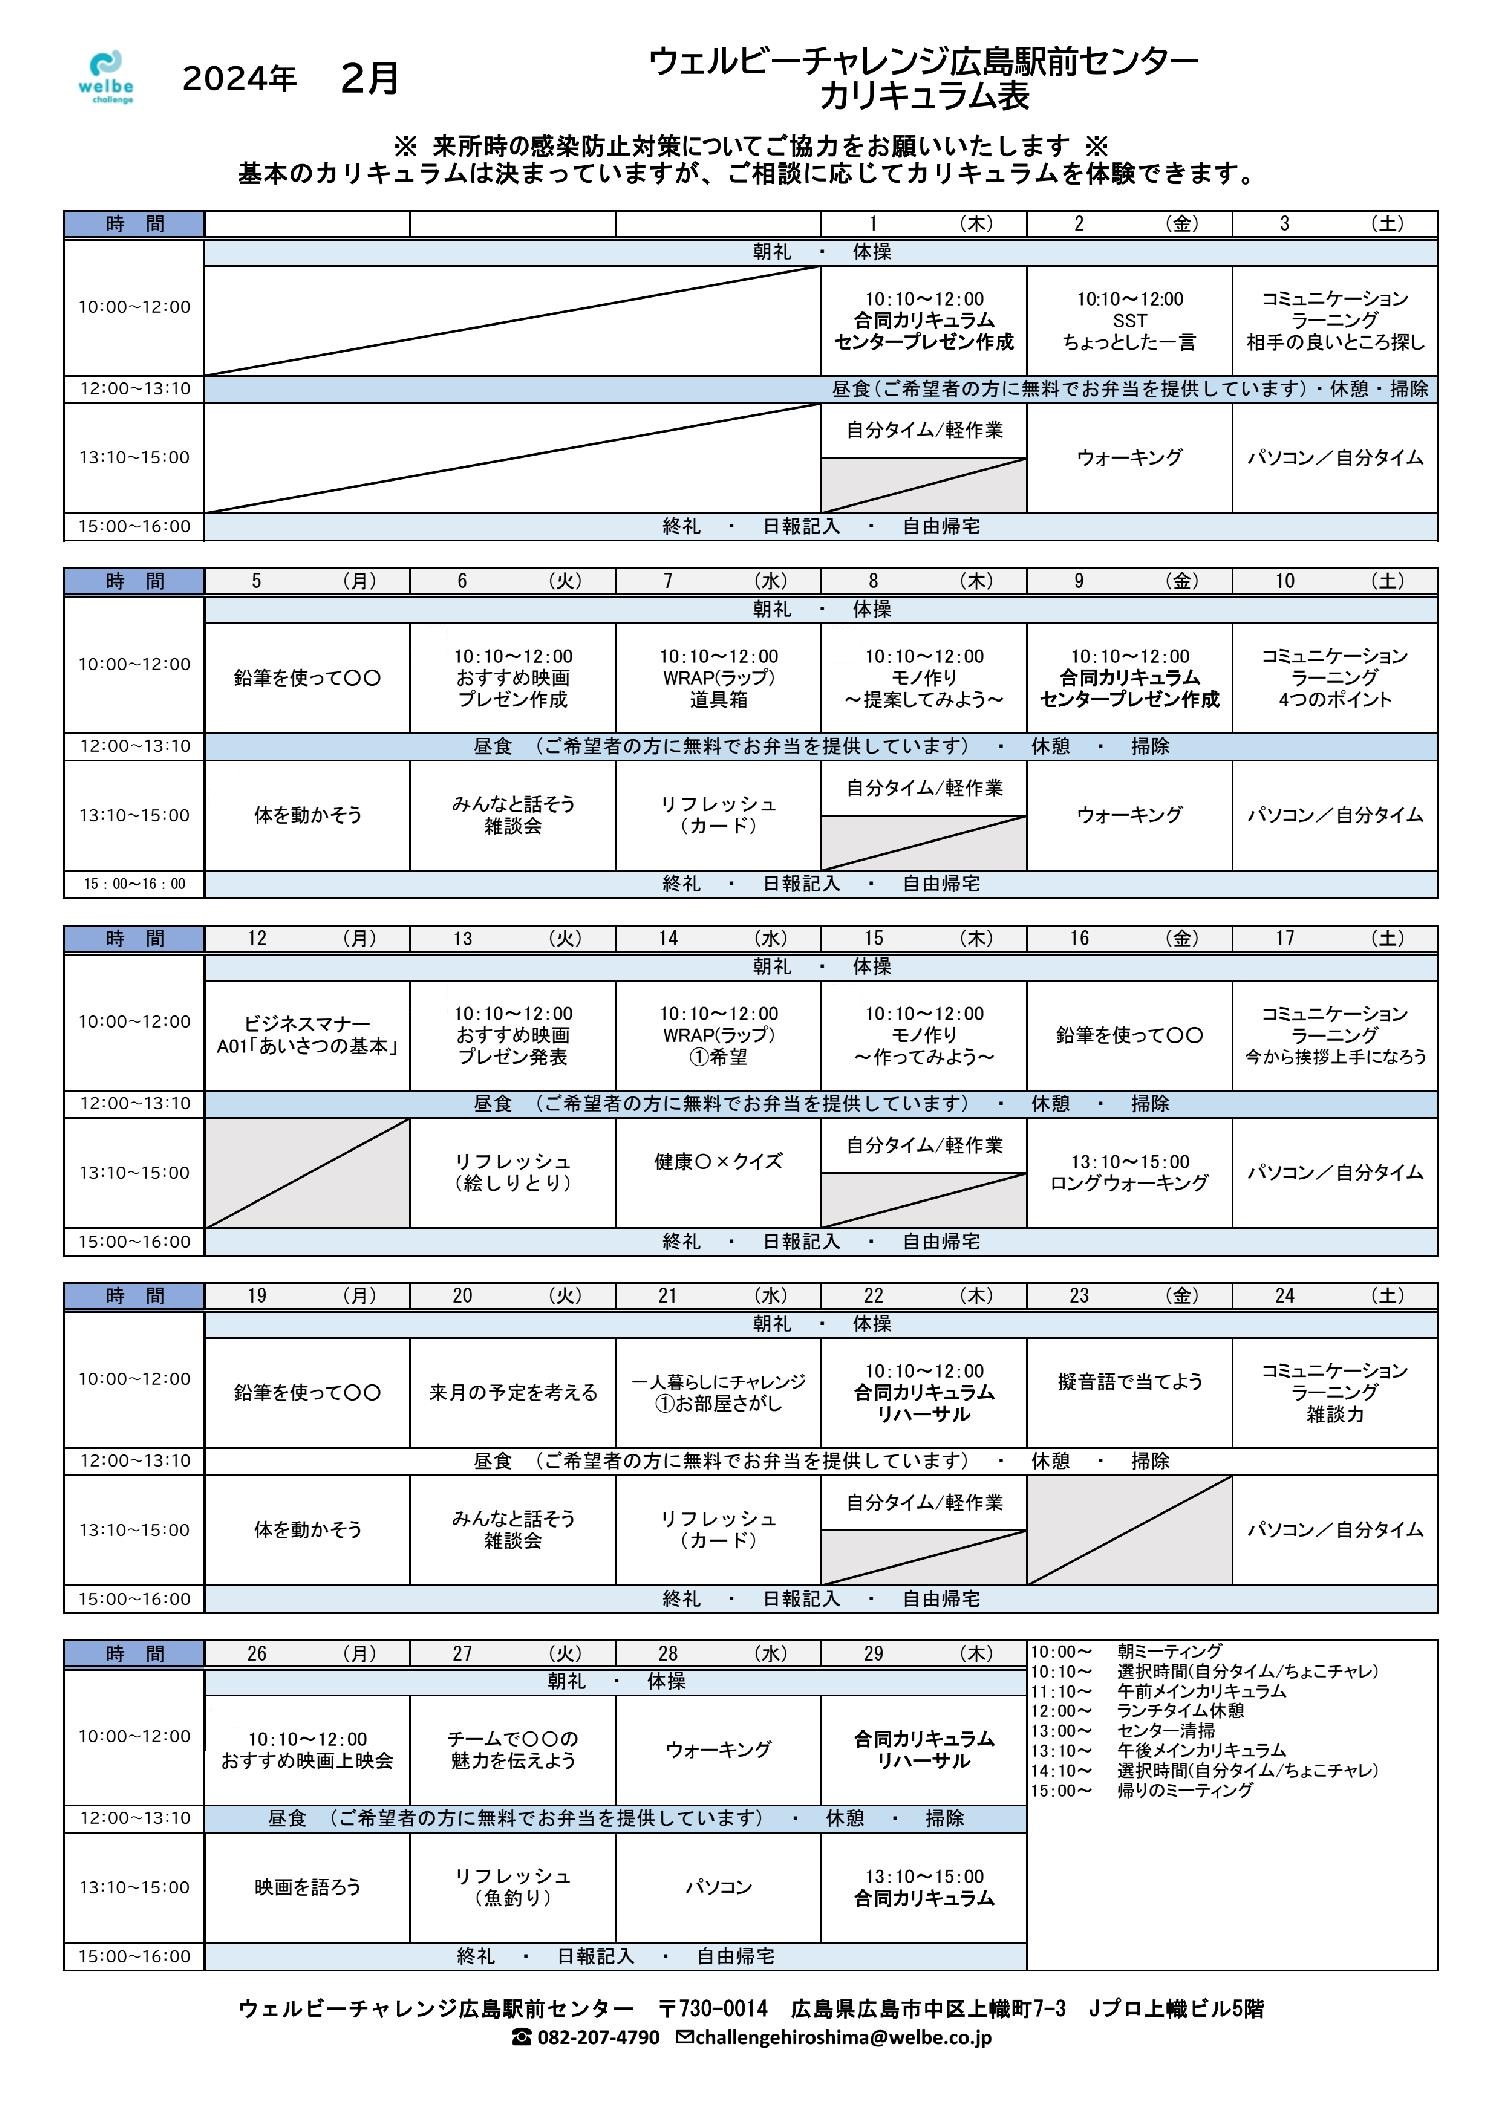 ウェルビーチャレンジ広島駅前センター2月カリキュラム表